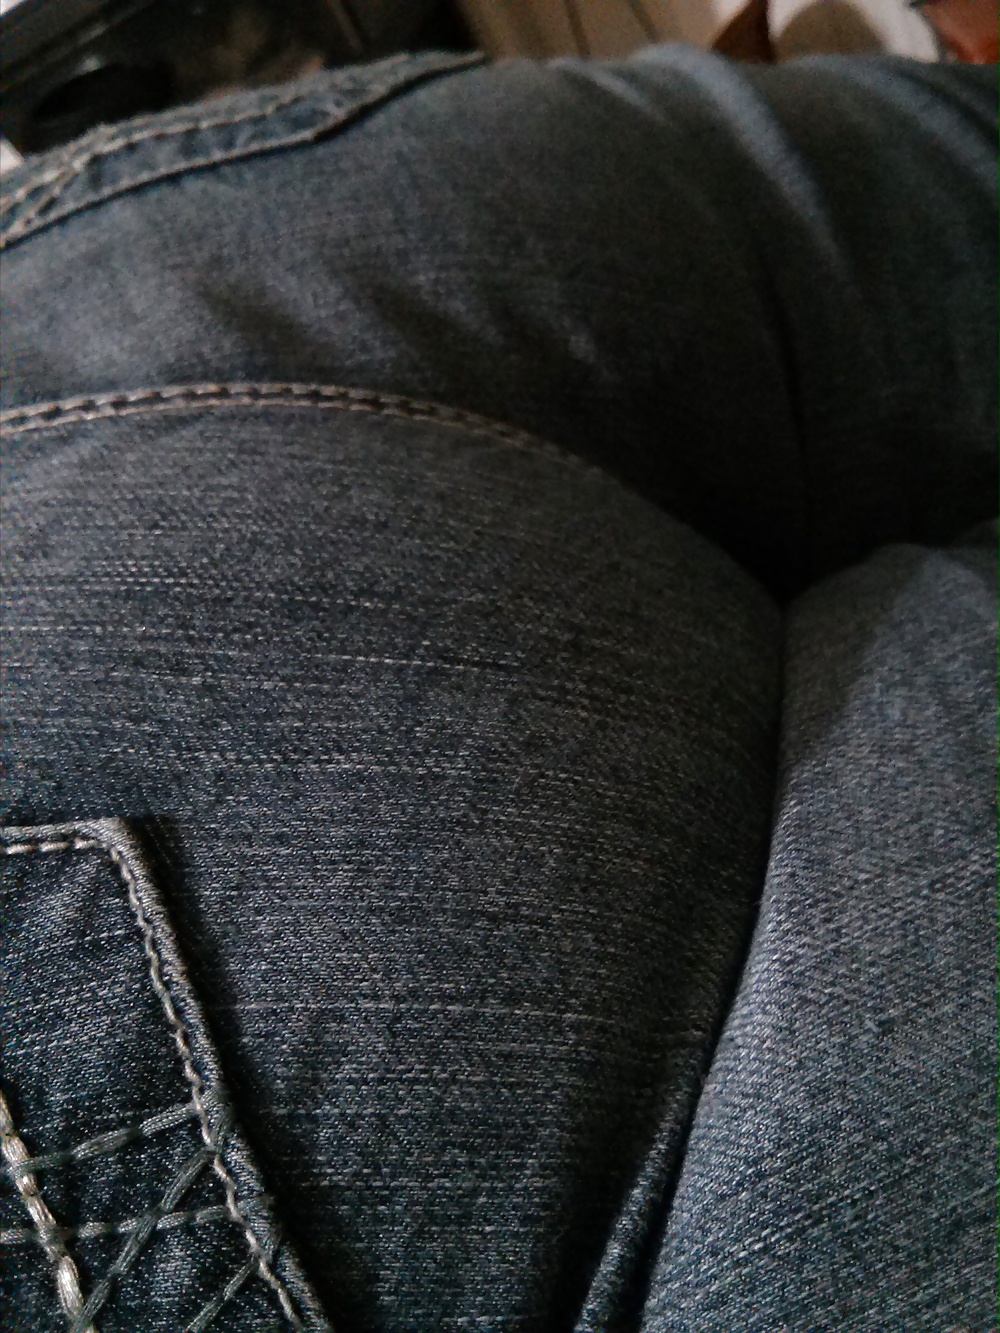 Fett Breit Latina Ass In Engen Jeans #31868424